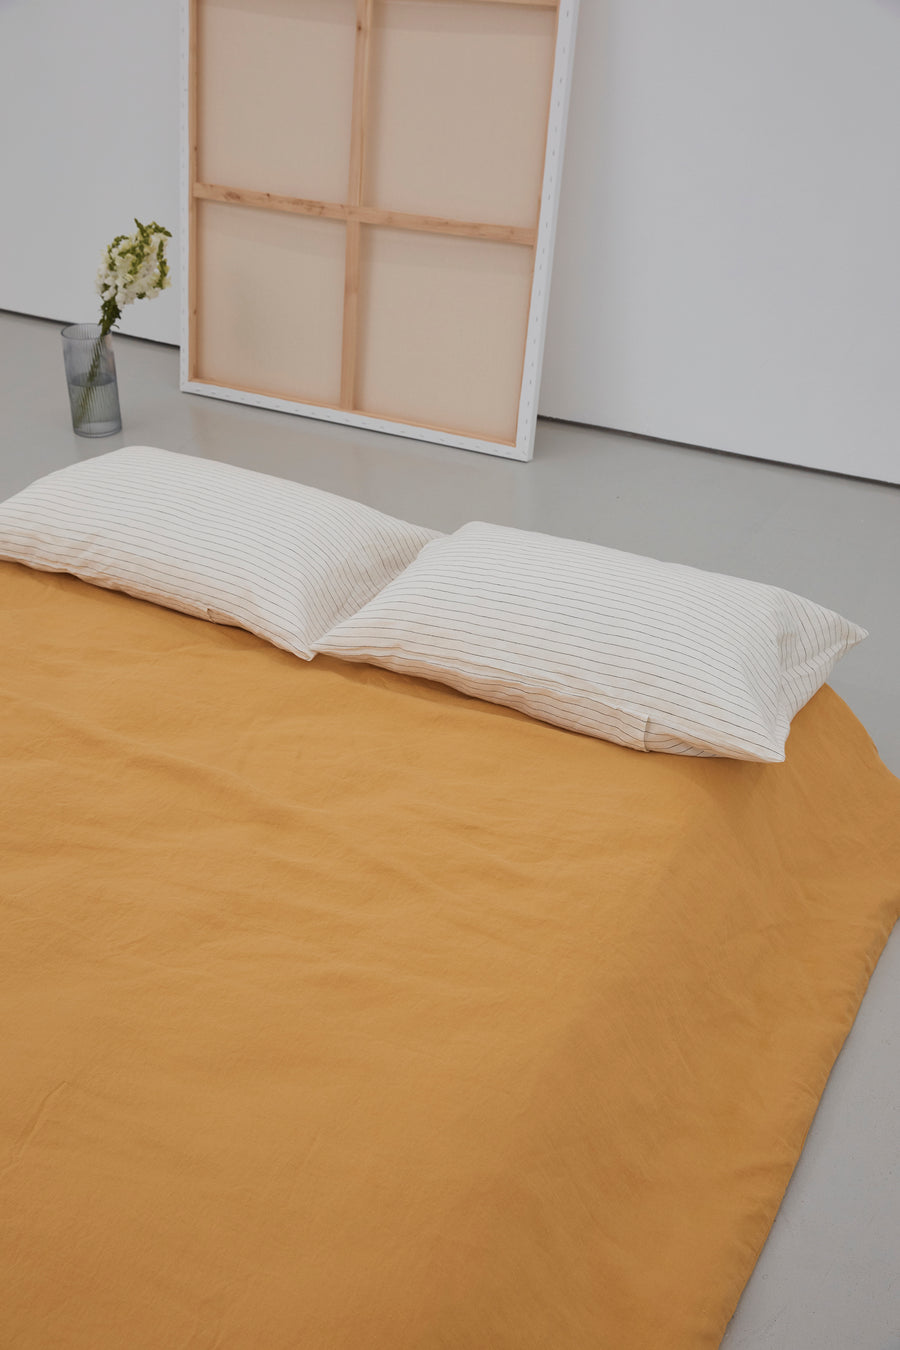 Mustard linen bedding